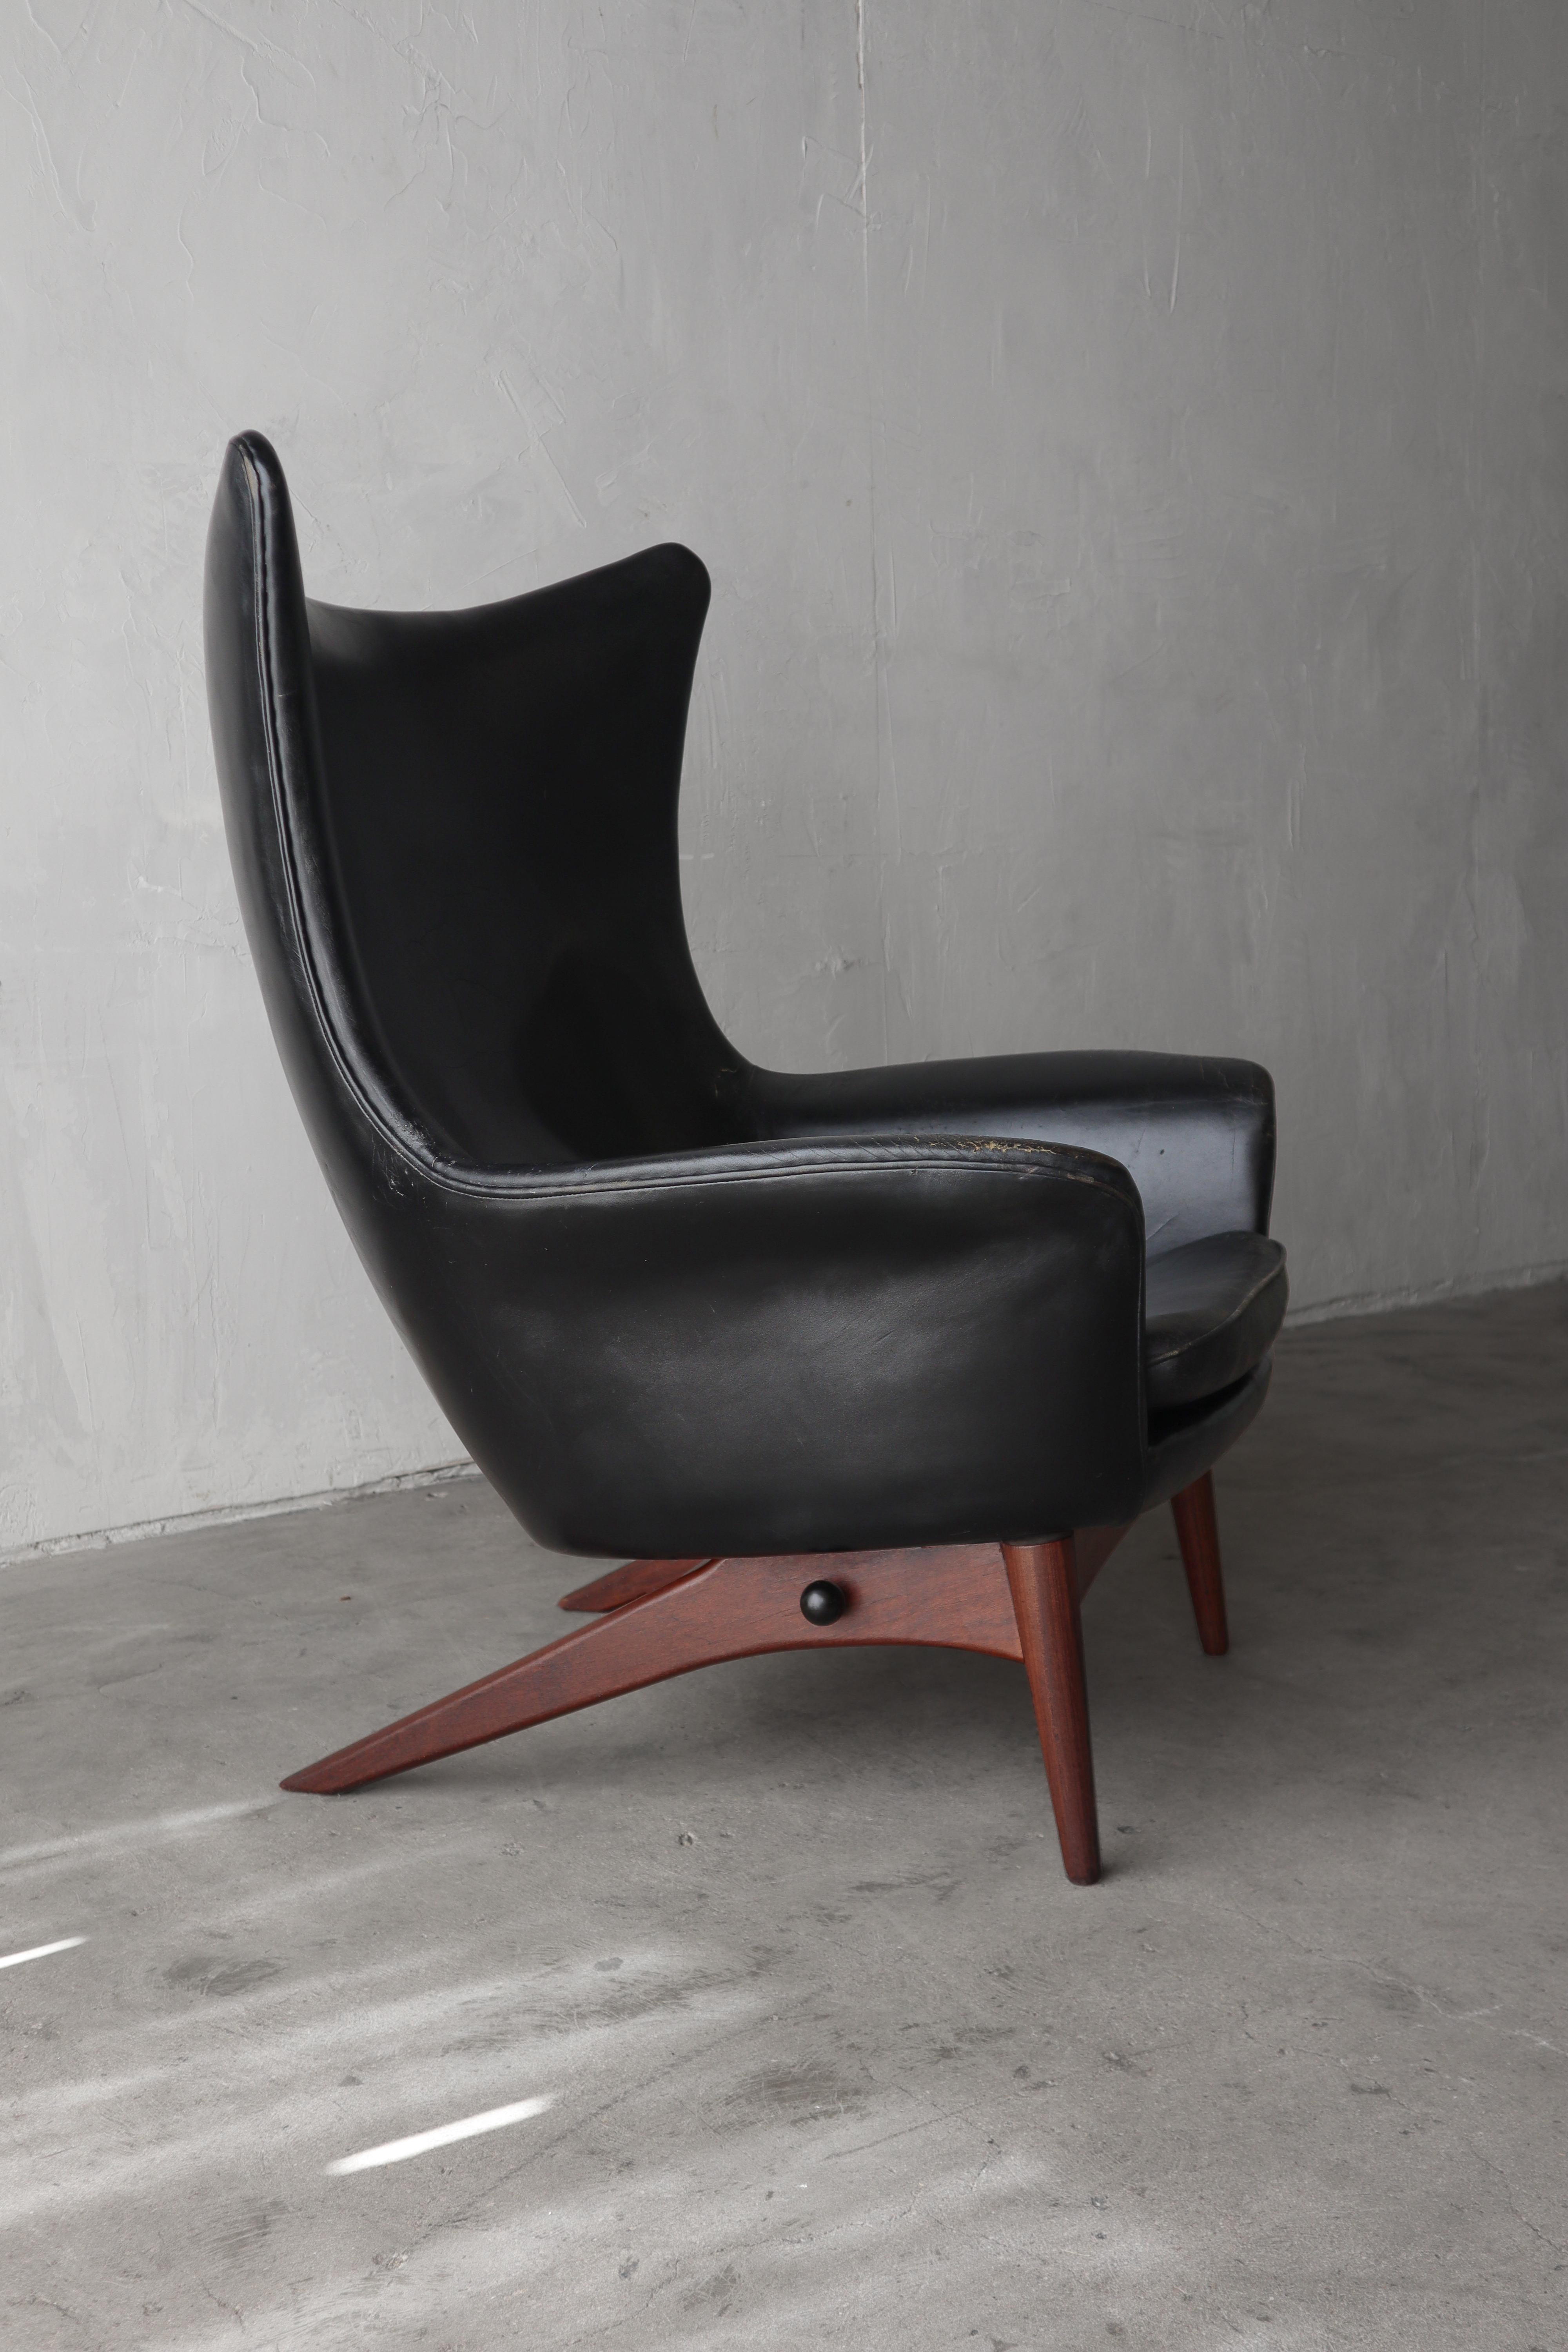 Dieser skulpturale Liegesessel von Henry Walter Klein ist der Inbegriff dänischen Designs.   

Der Sessel hat ein wunderschönes Wingback-Design und eine arretierbare Liegeposition für maximalen Komfort.  Die ausladenden Beine aus Nussbaumholz tragen